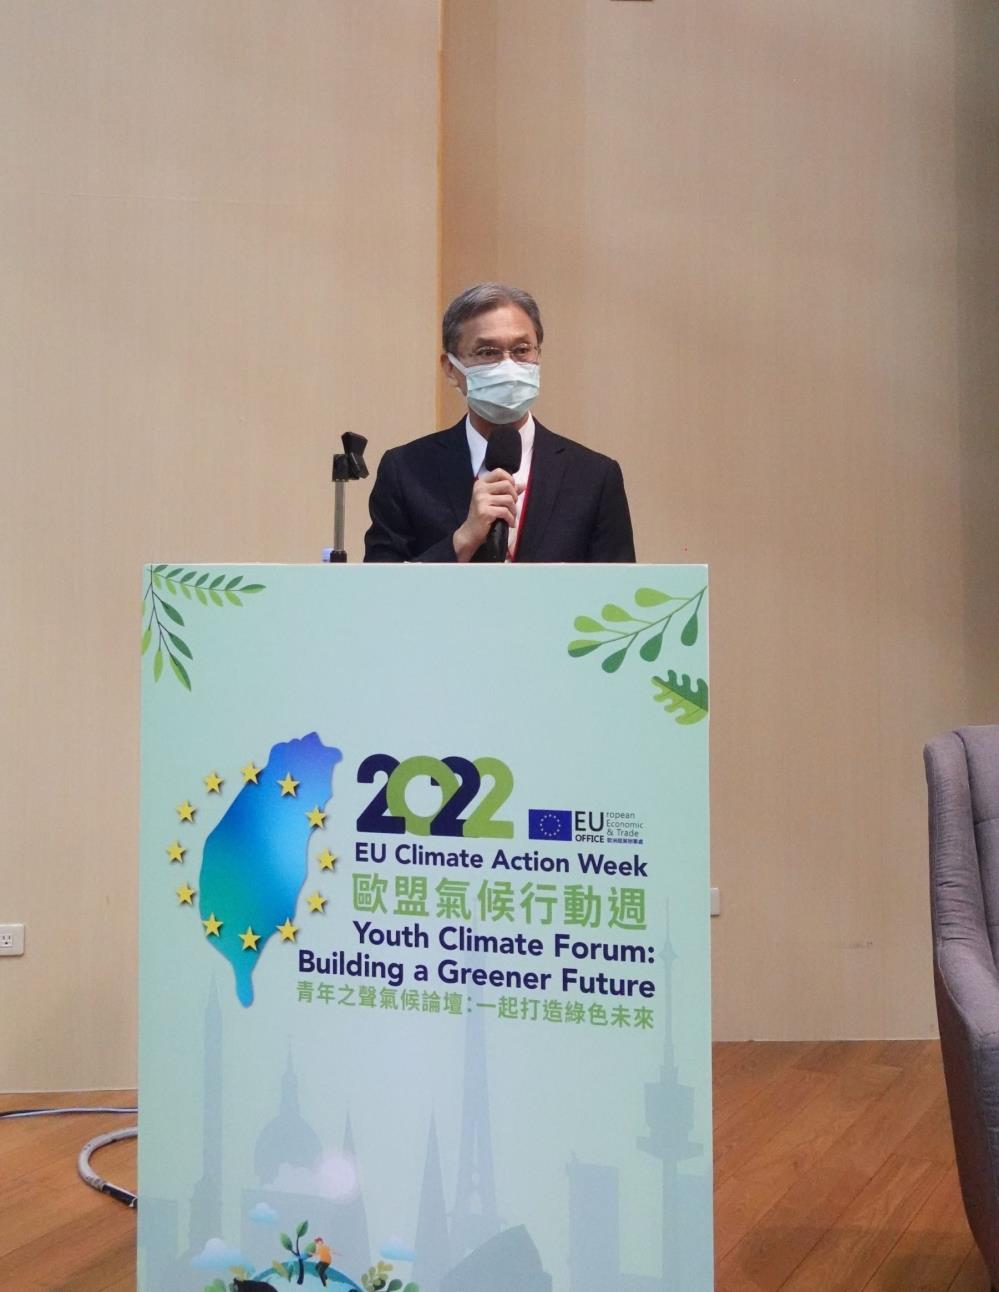 環保署葉俊宏主任秘書表示2050淨零勢將帶動大量綠色就業機會.jpg